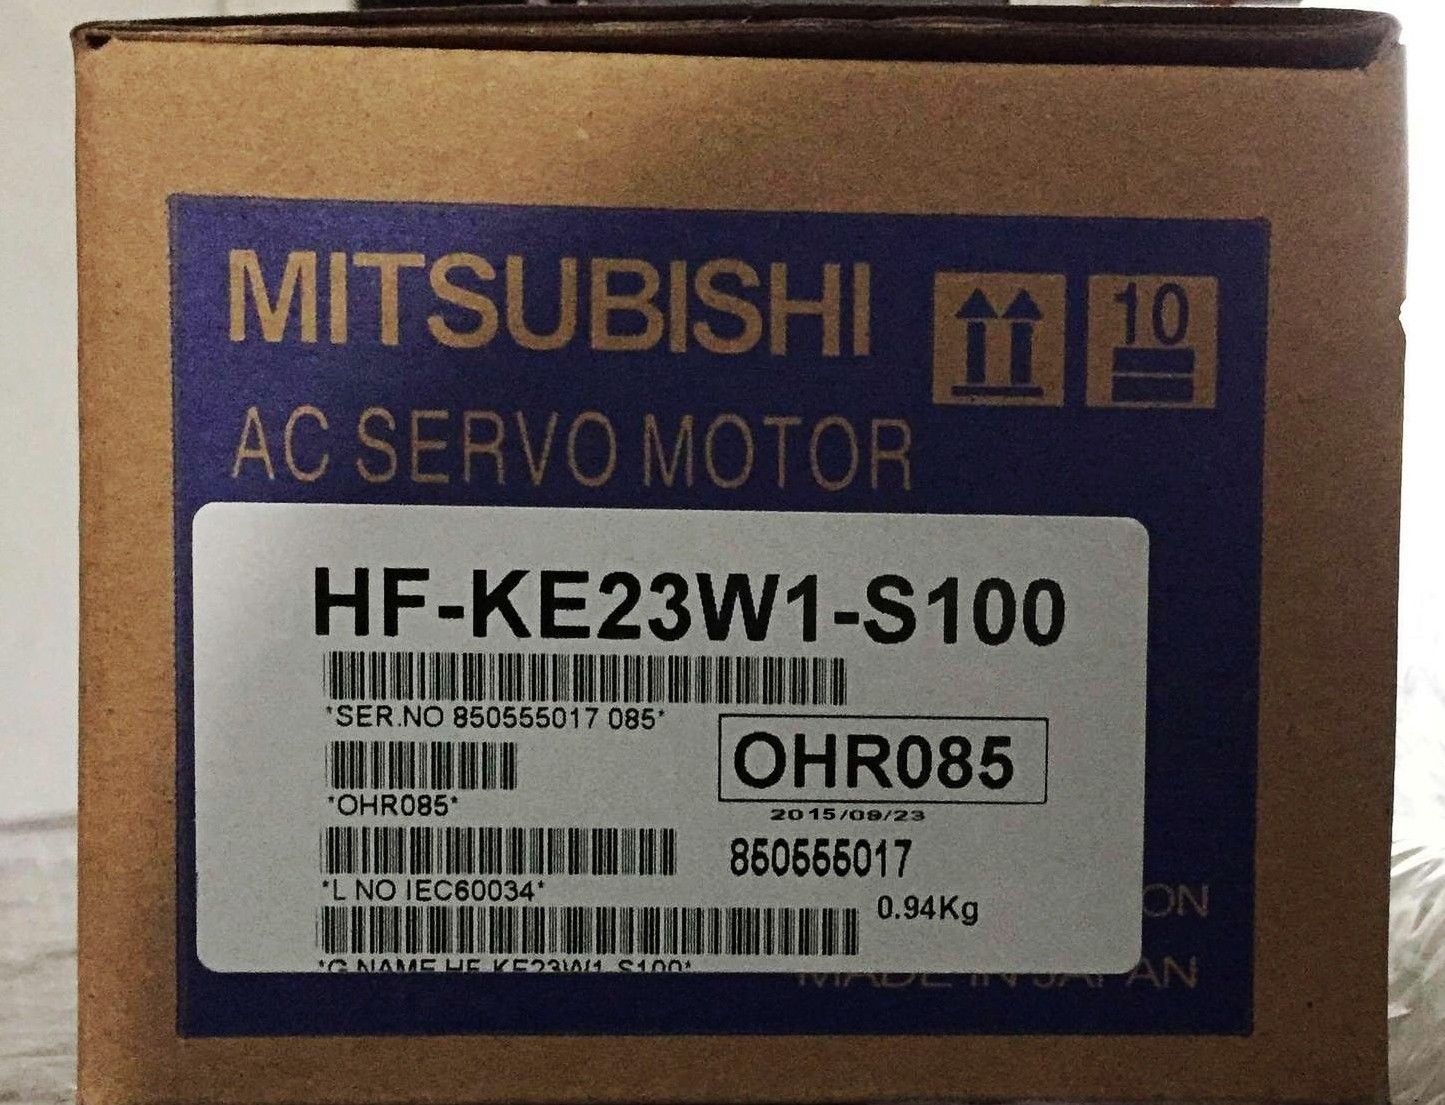 NEW&ORIGINAL Mitsubishi SERVO MOTOR HF-KE23JW1-S100 in box HFKE23JW1S100